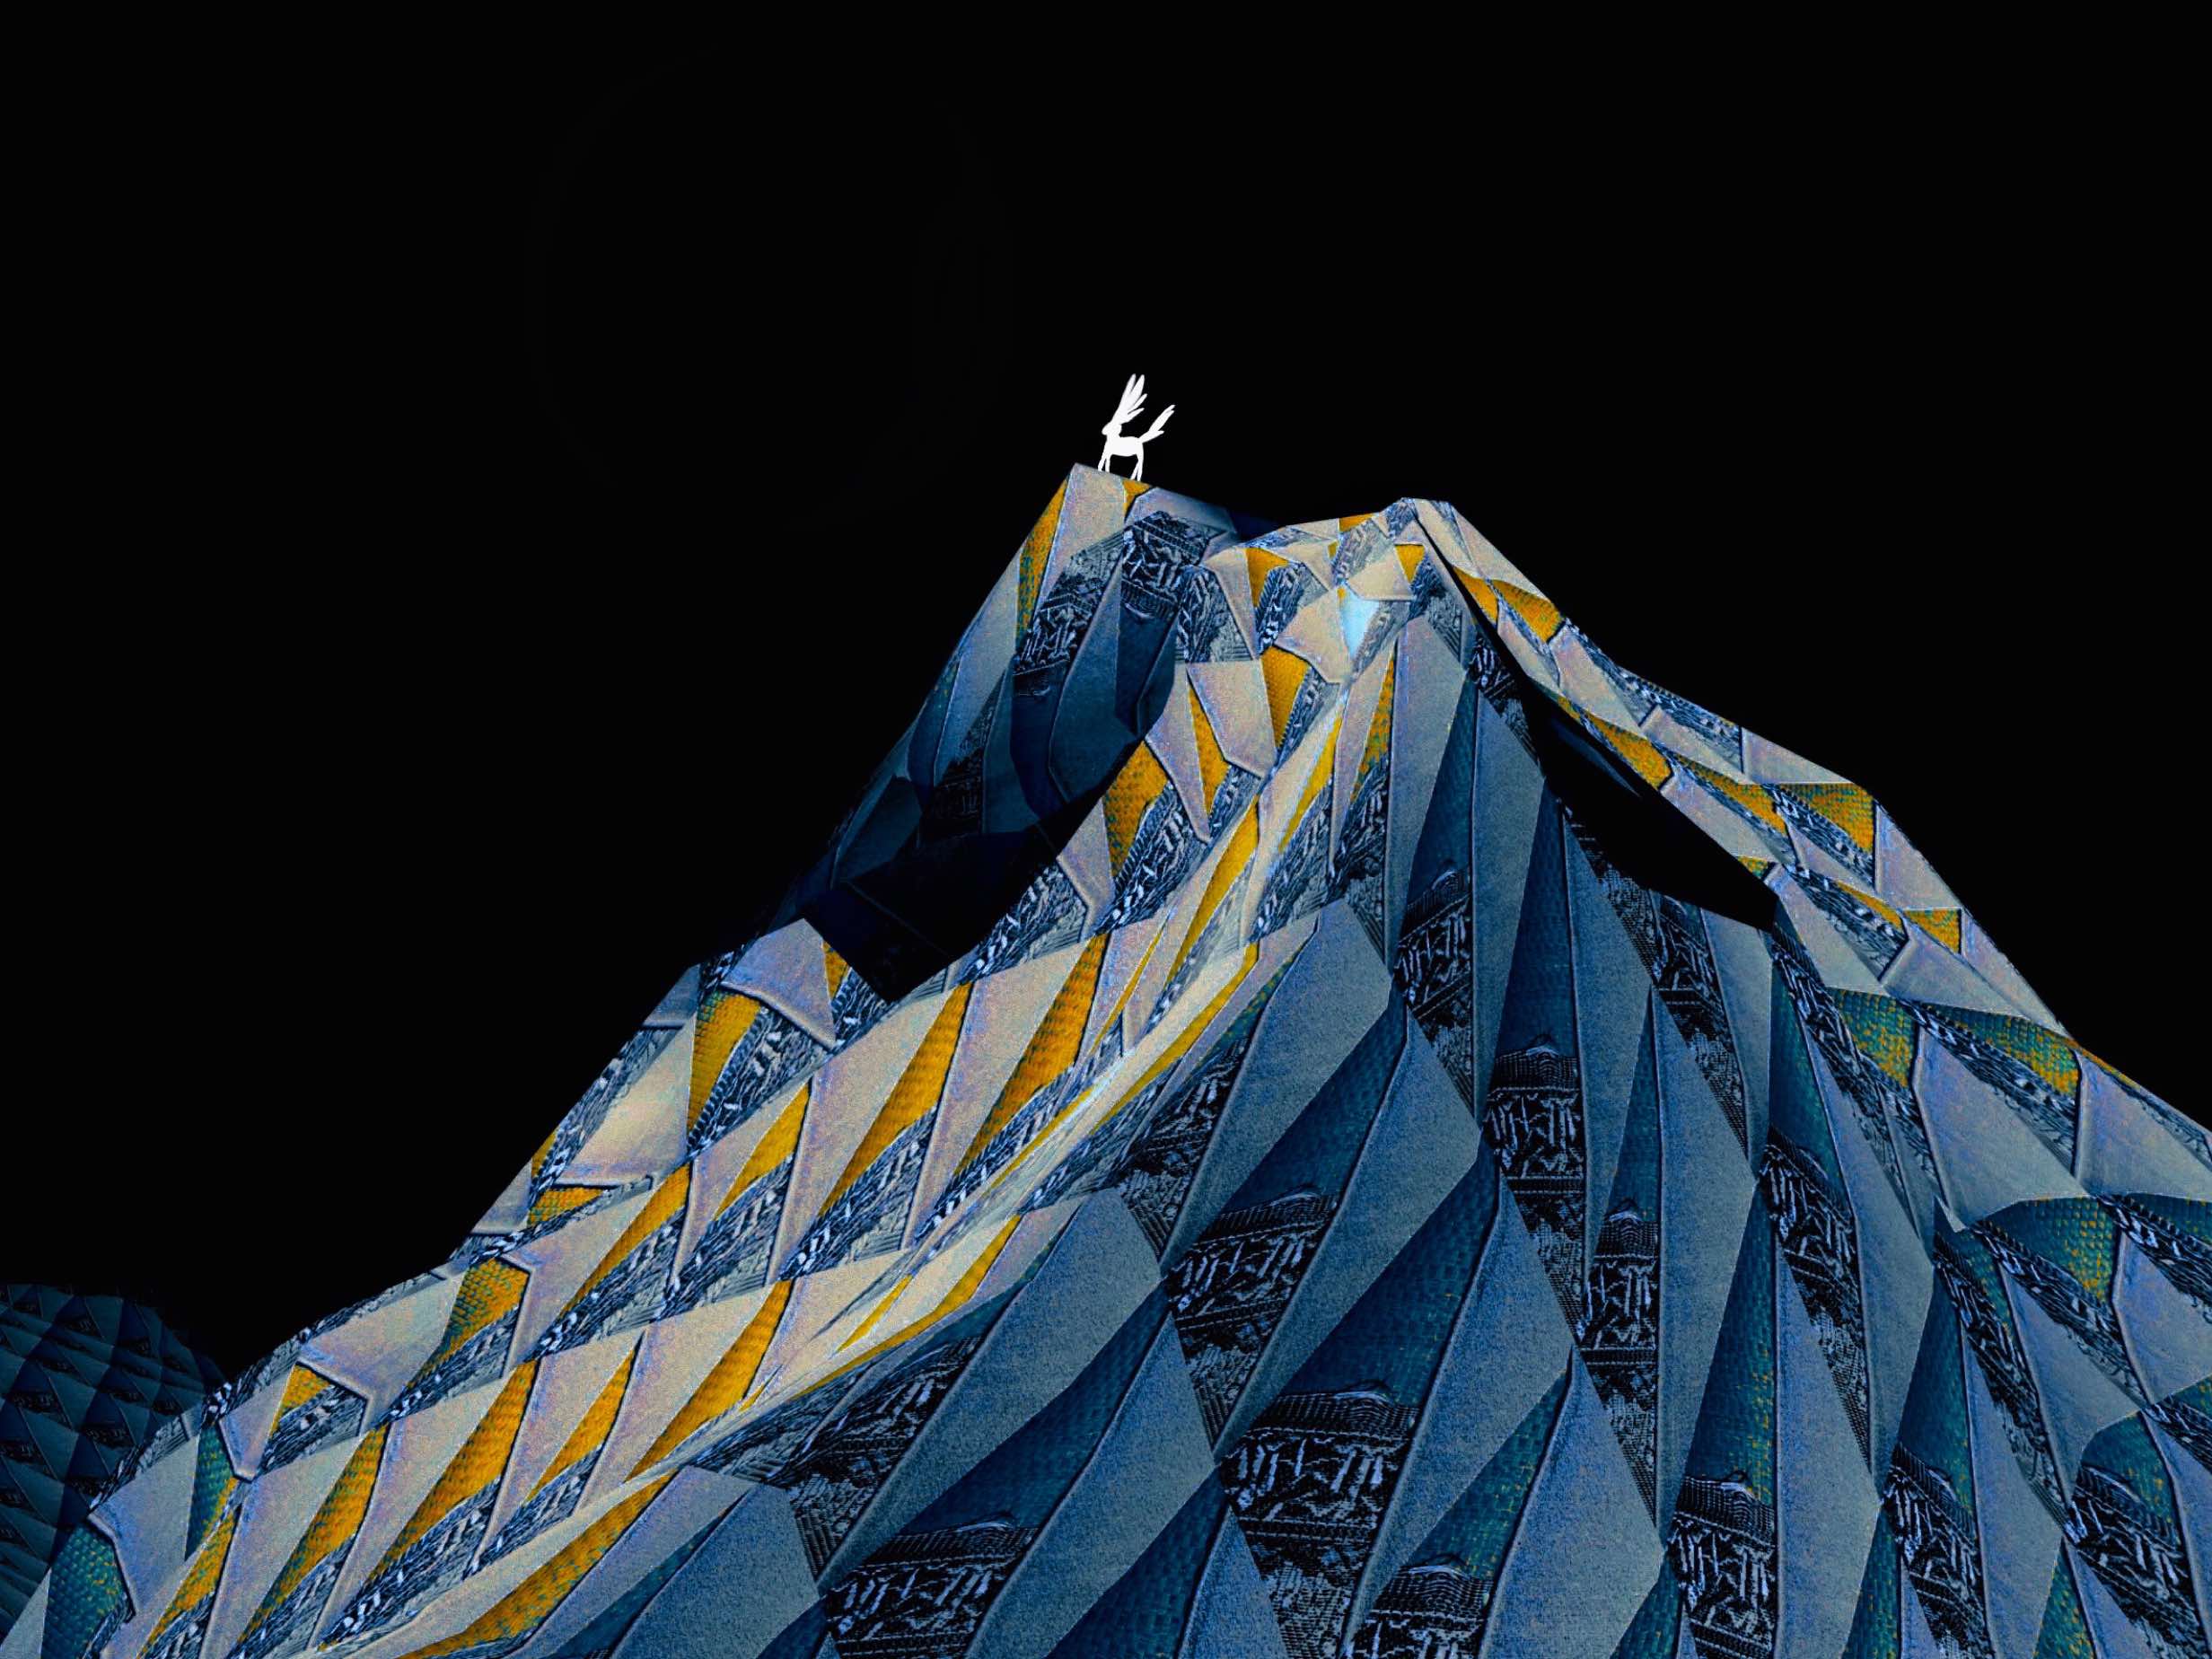 Atsushigraphのグラフィックアート「Nokto」。真っ暗な夜を背景に浮かび上がる山並みを描いたグラフィックを拡大した画像です。